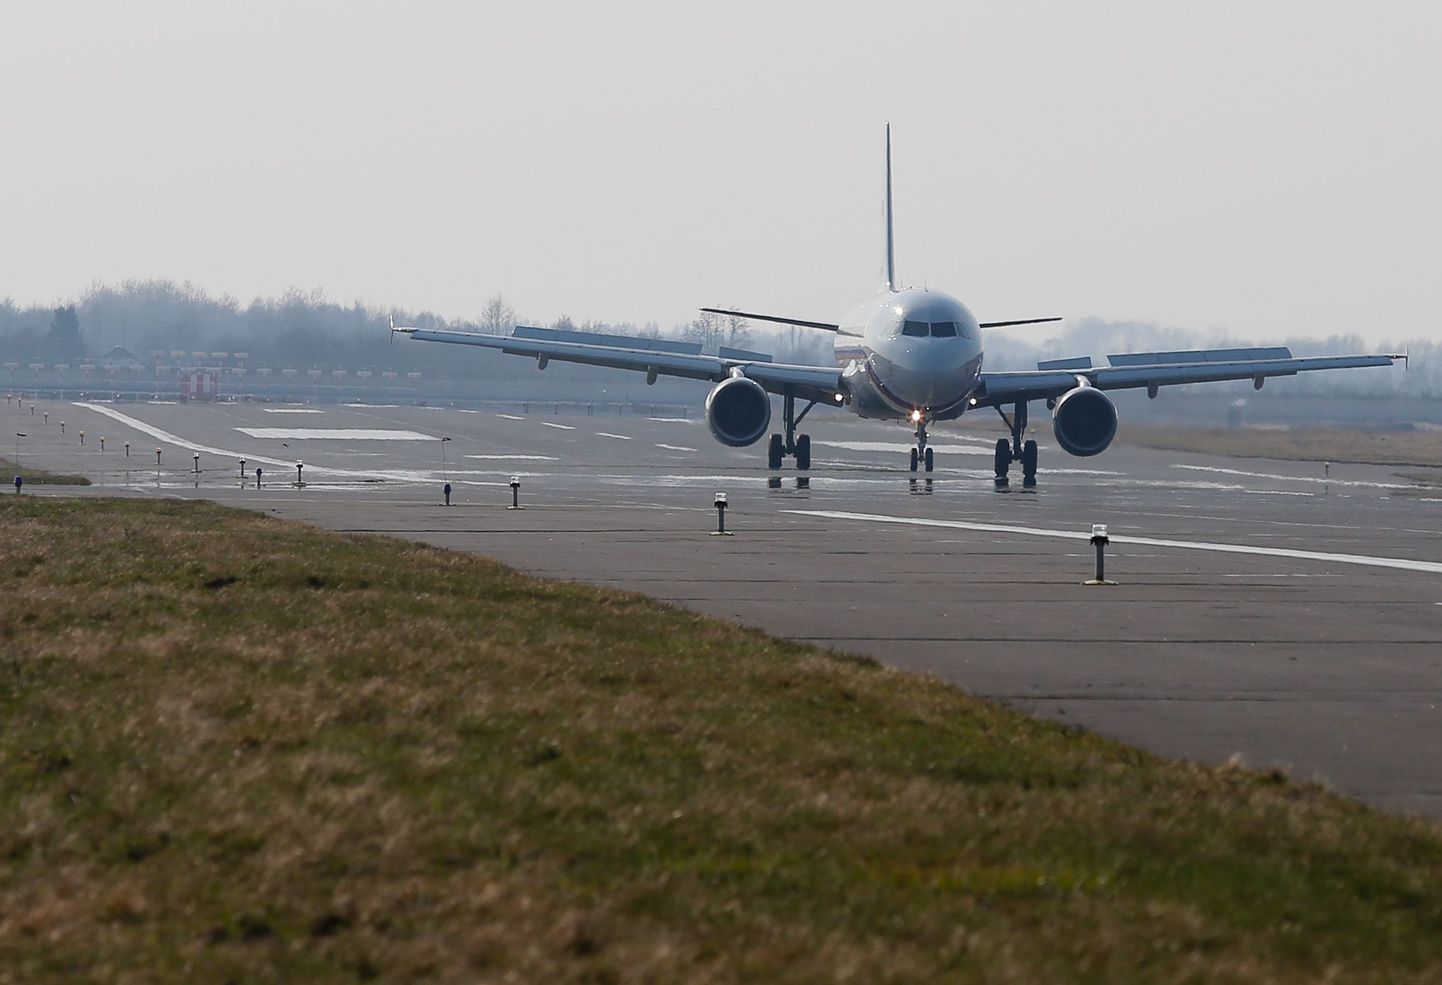 Lennuk tõuseb õhku Kaliningradi lennuväljalt